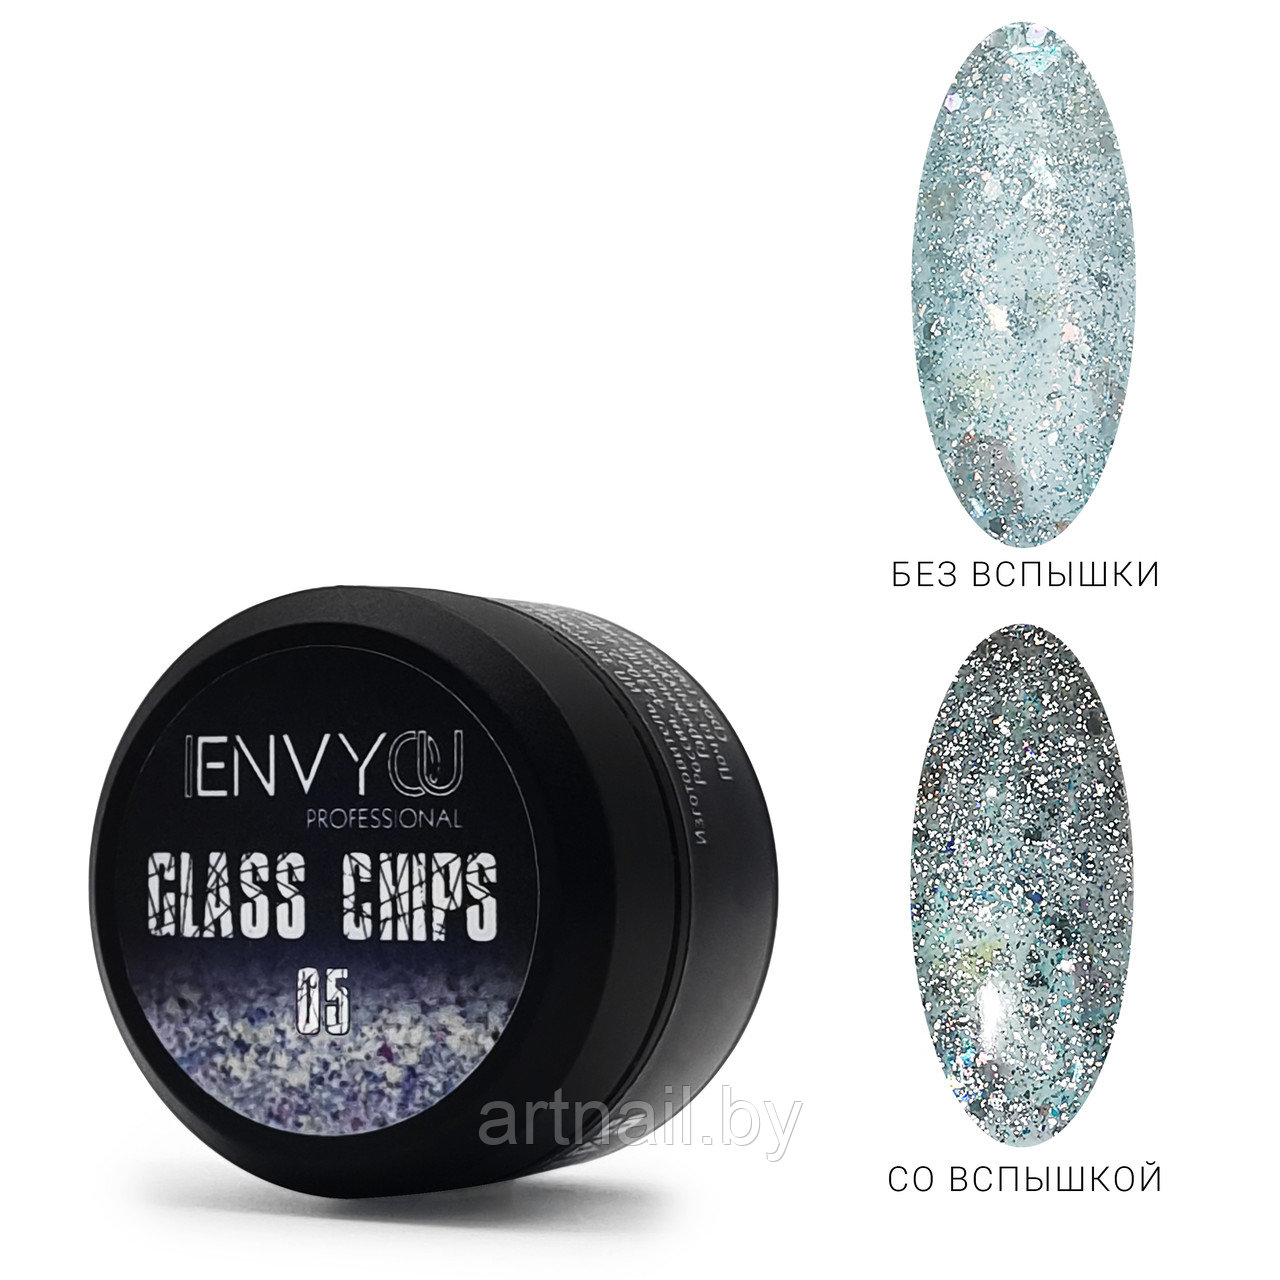 ENVY, Гель декоративный Glass Chips №05, 6g